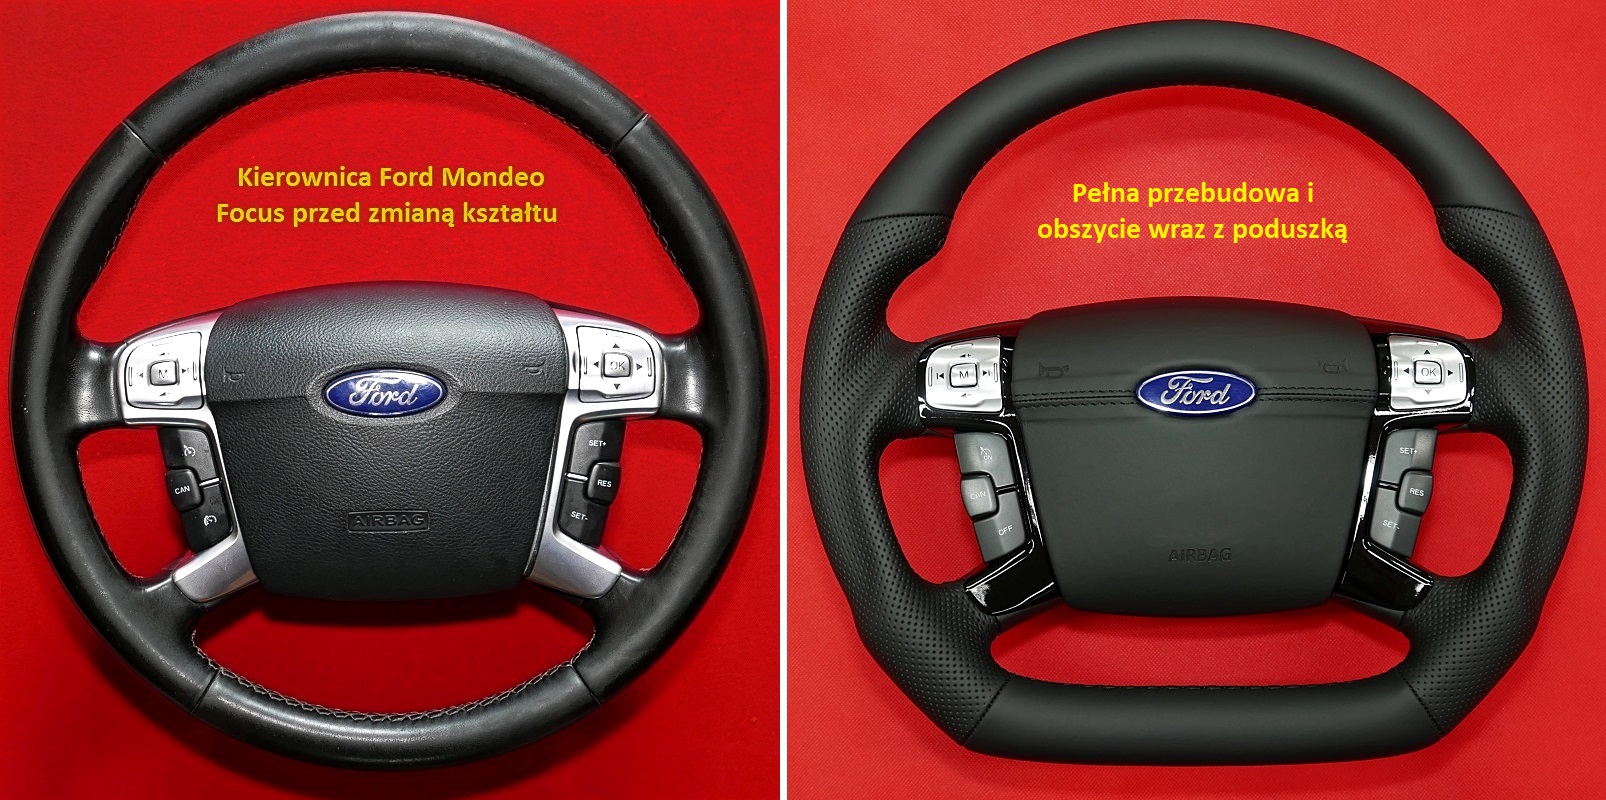 Kierownica Ford Mondeo Galaxy tuning modyfikacja spłaszczenie